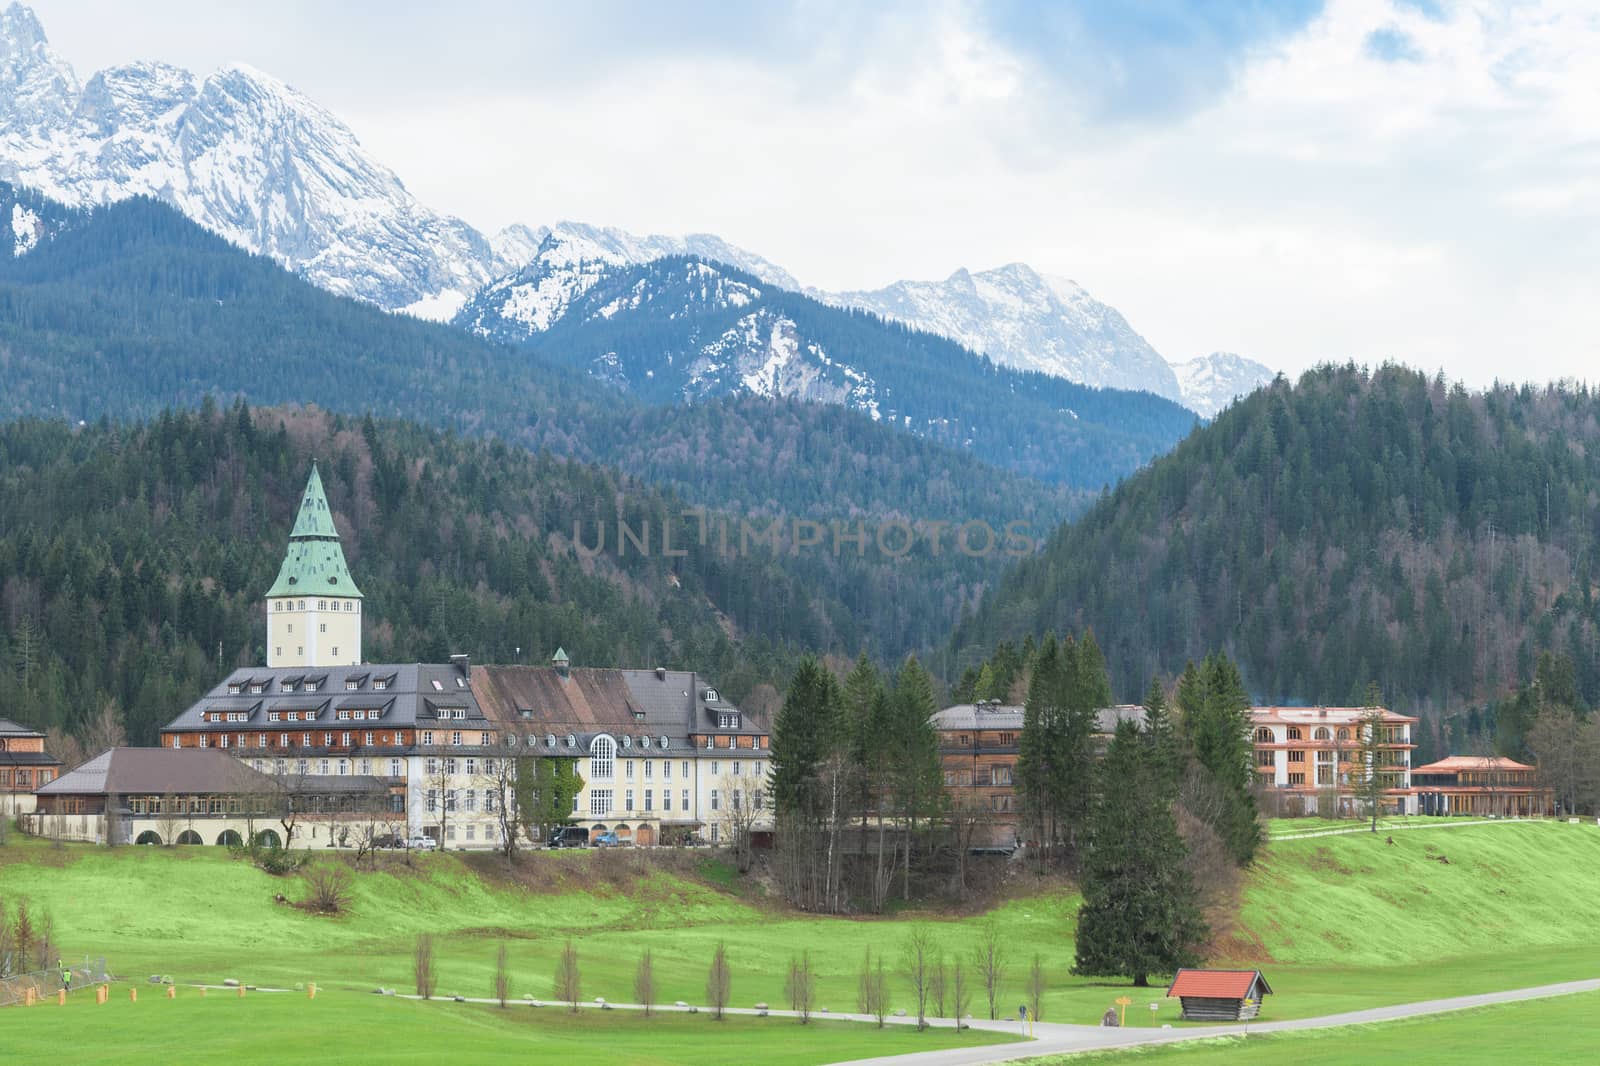 Hotel complex Schloss Elmau in Bavarian Alps summit G7 G8 by servickuz